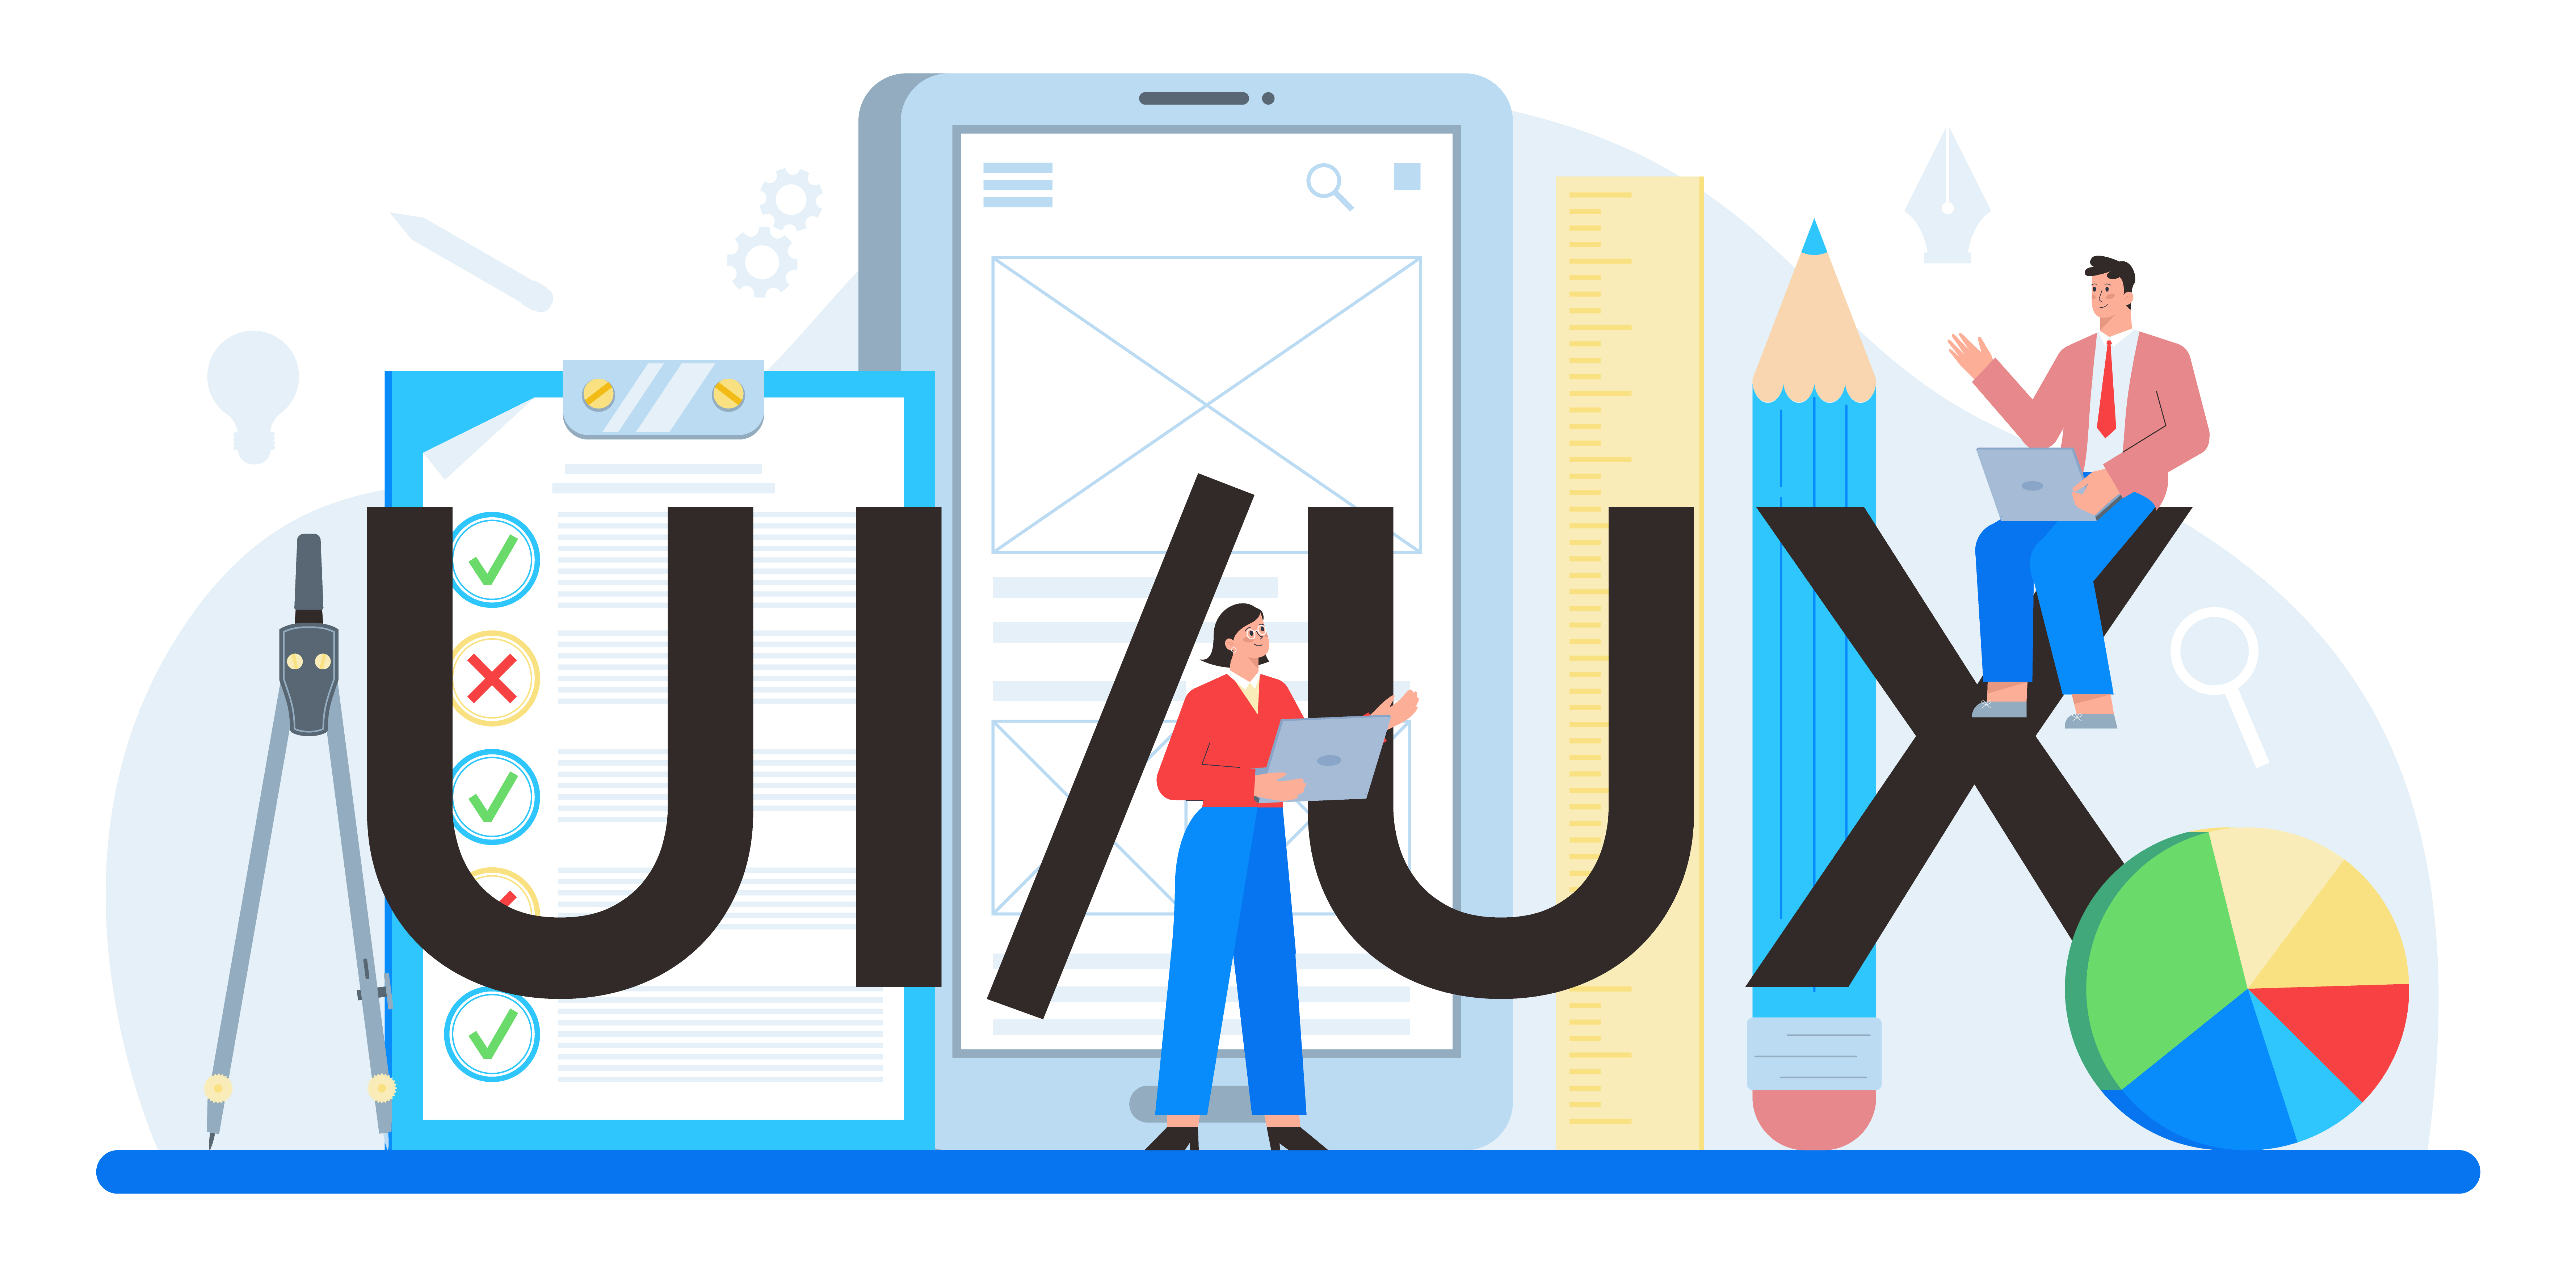 UI dan UX 101: 3 Hal Penting Untuk Mengembangkan Produk Digital